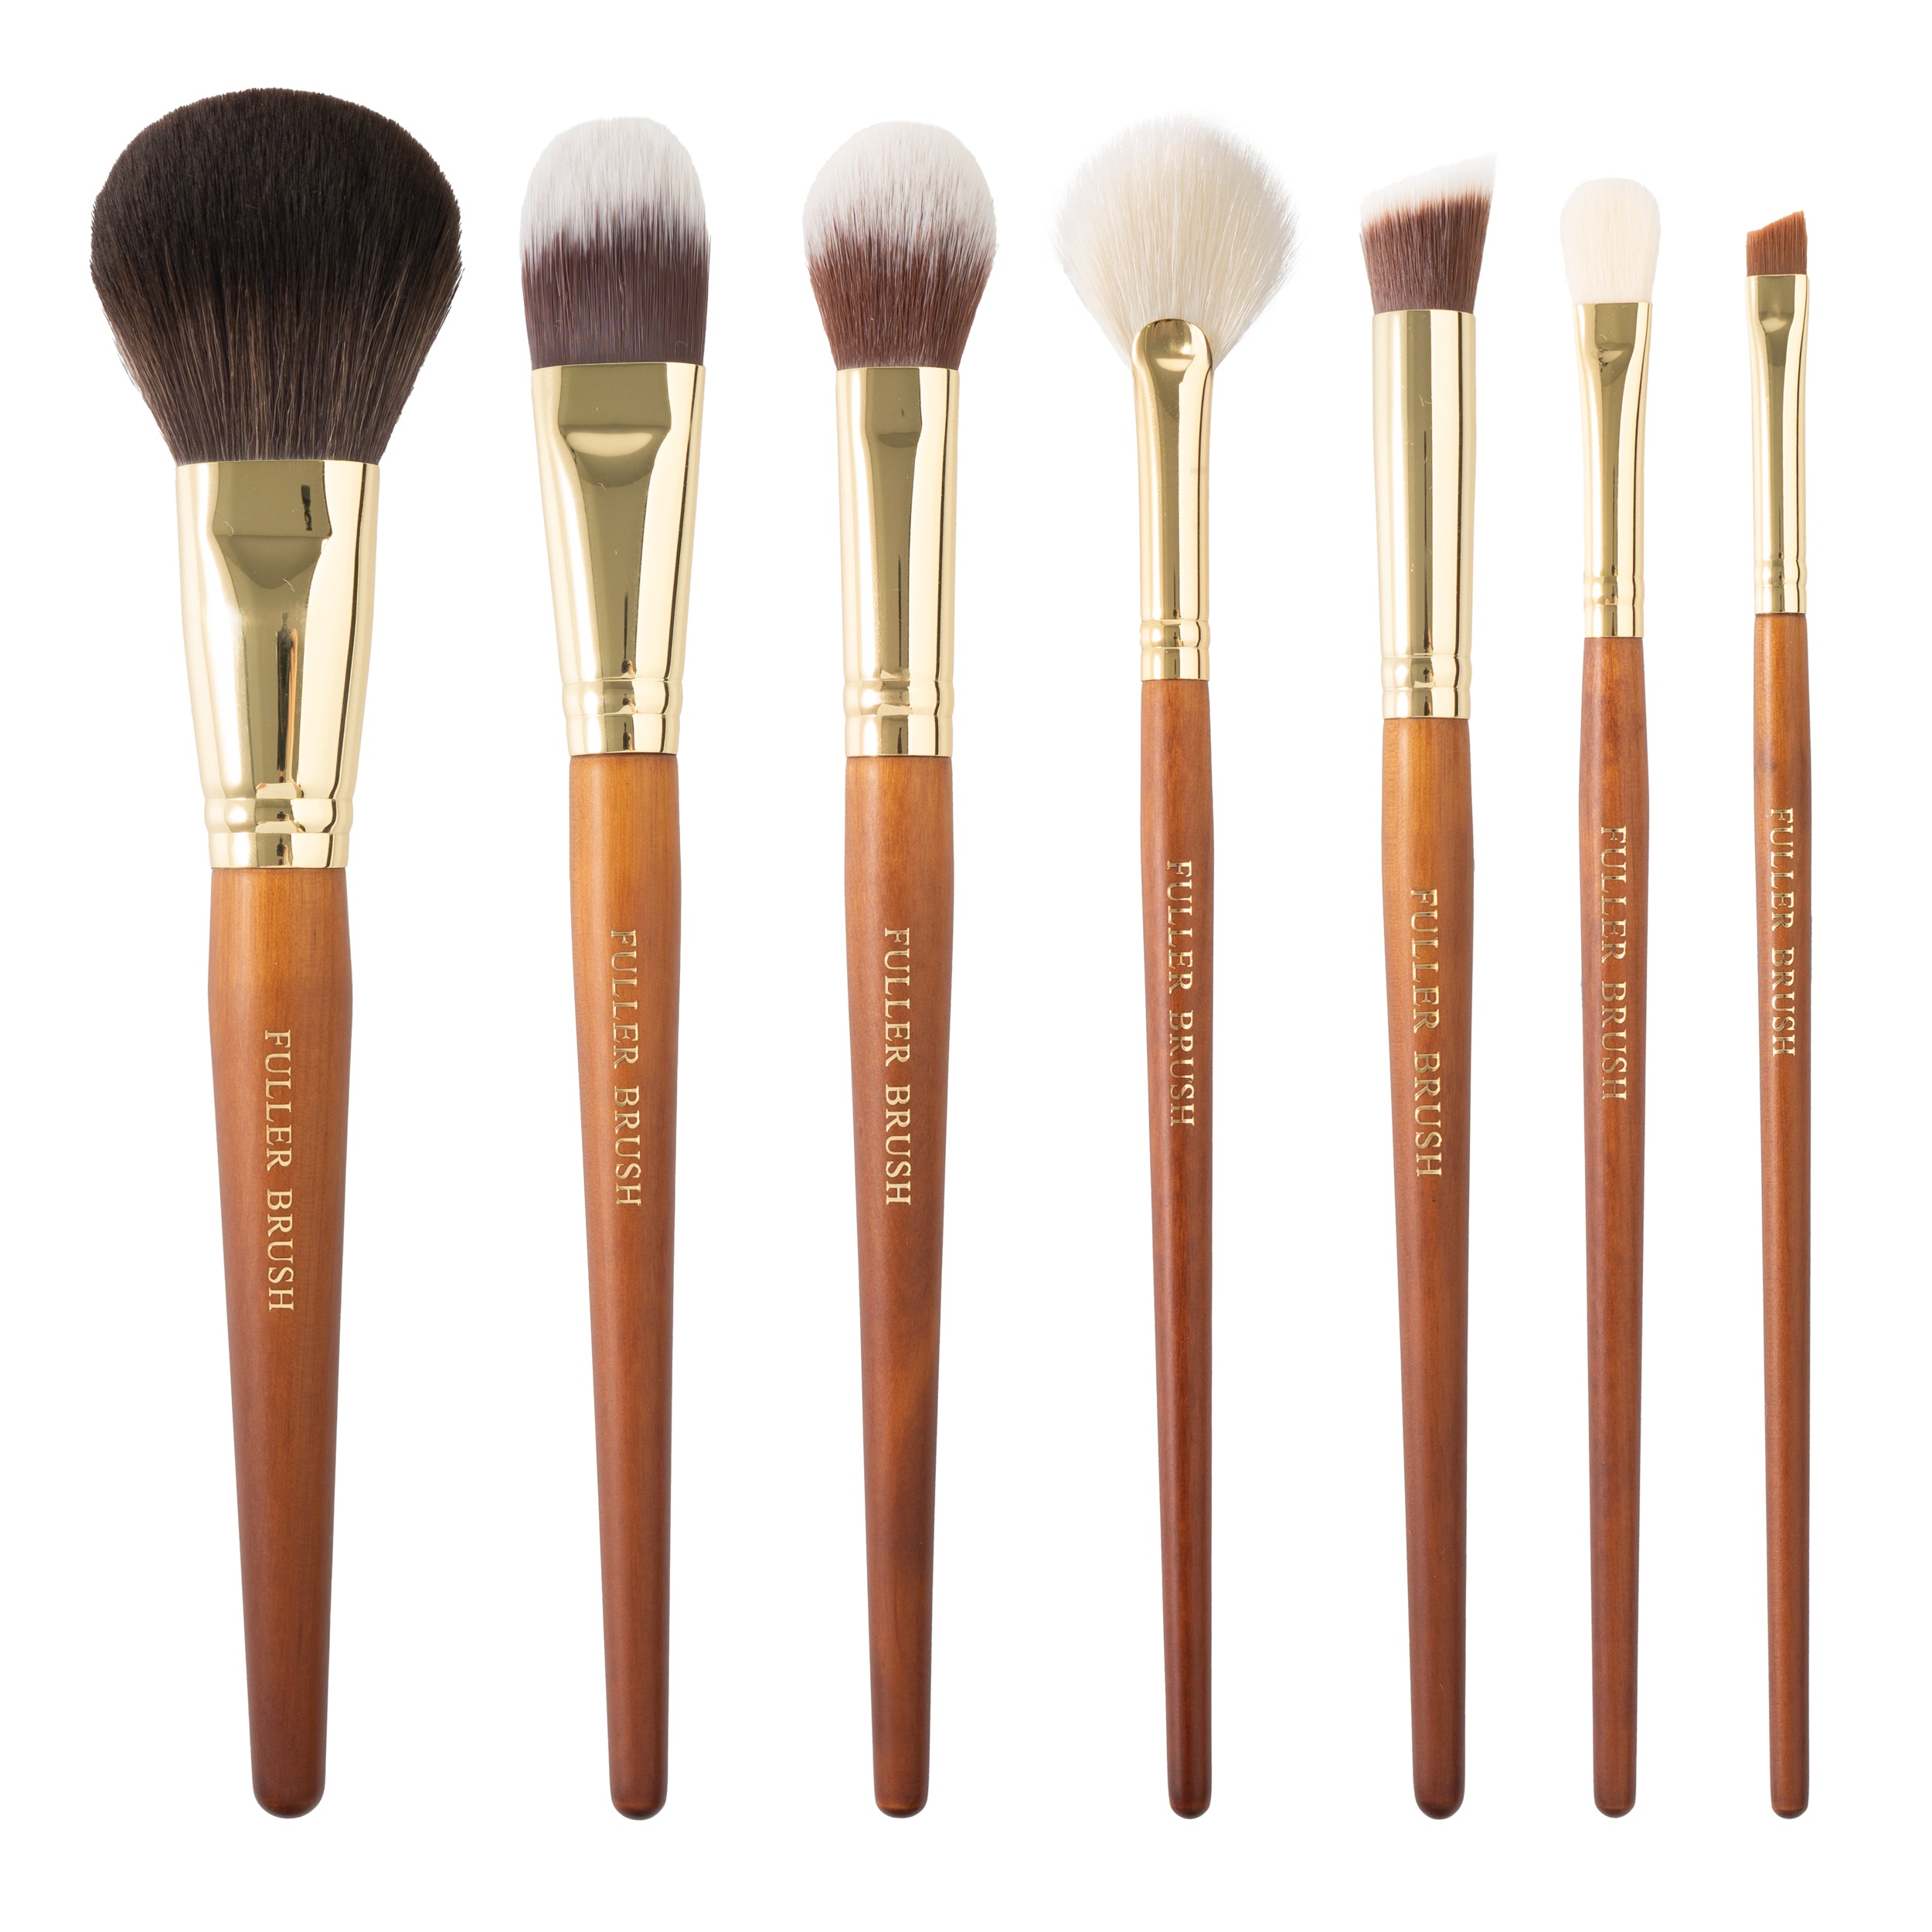 Fuller Brush Cosmetic Brush Set with Case (set of 7 Brushes)